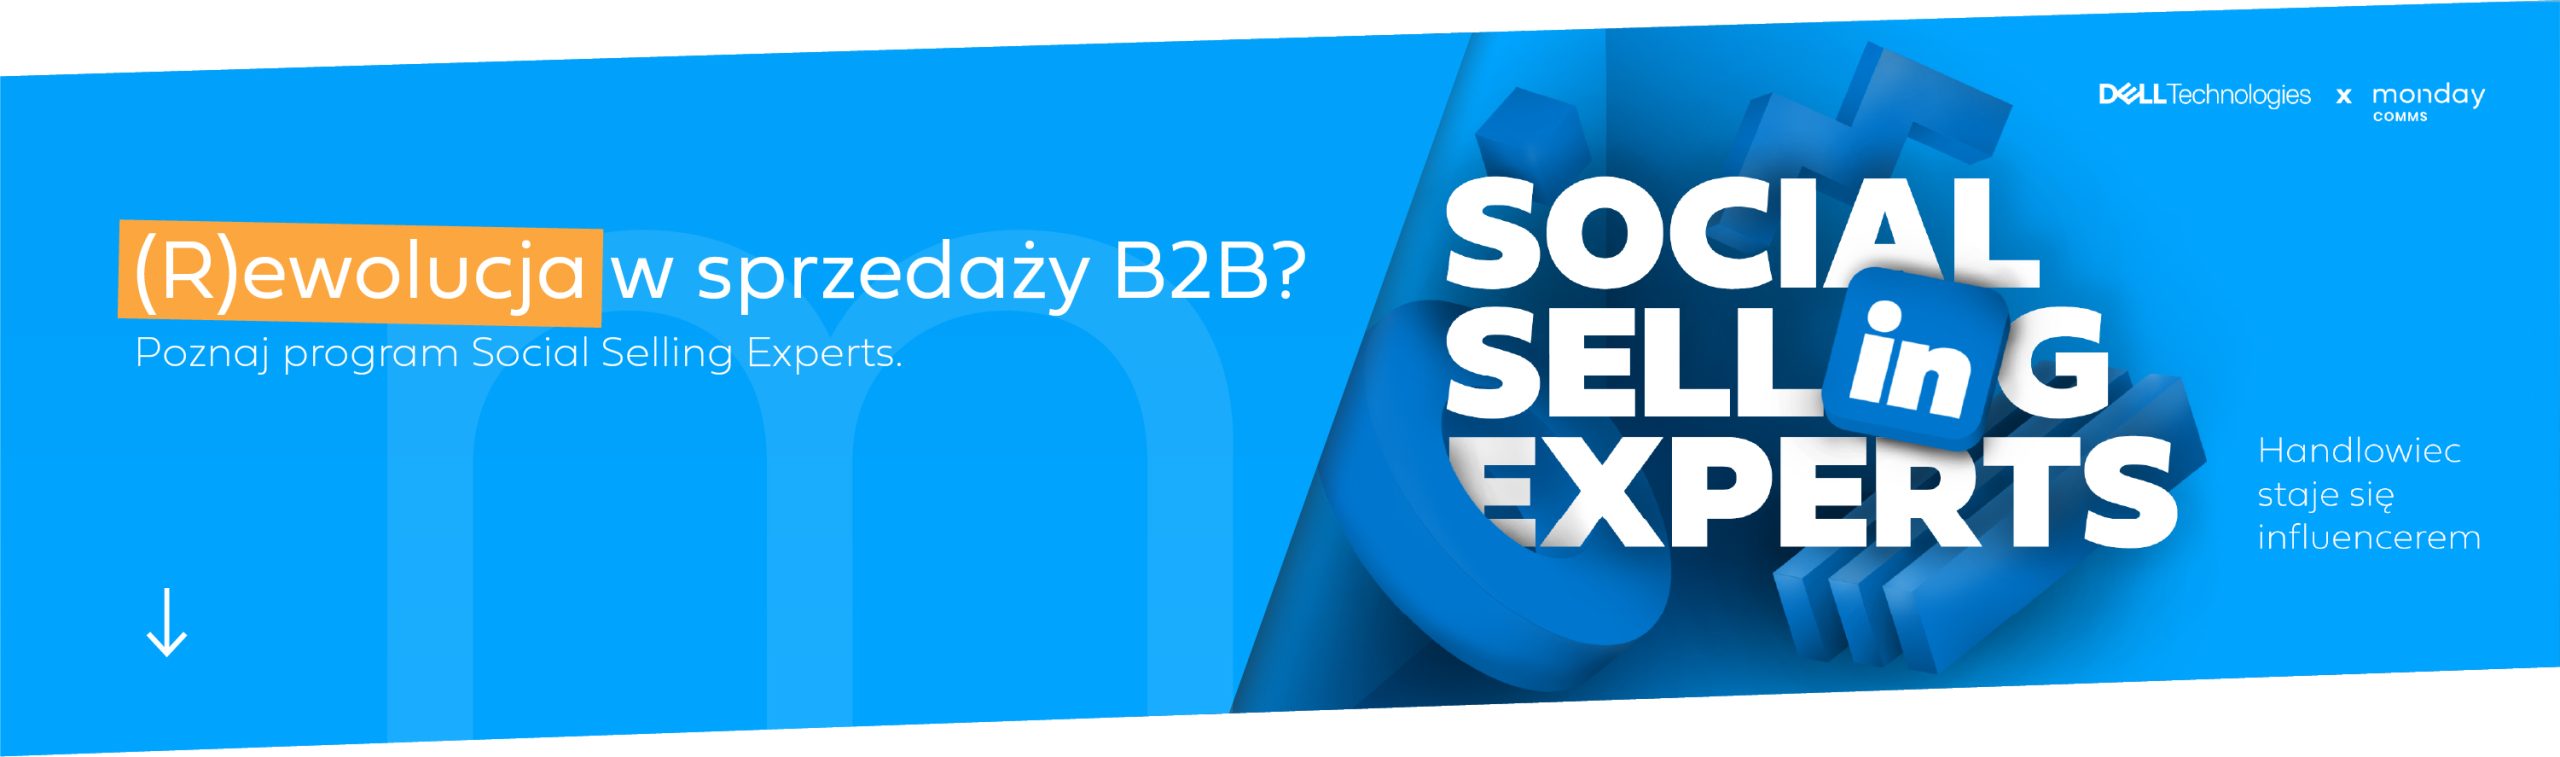 (R)ewolucja w sprzedaży B2B? Poznaj program Social Selling Experts i nasze podejście do marketingu w B2B